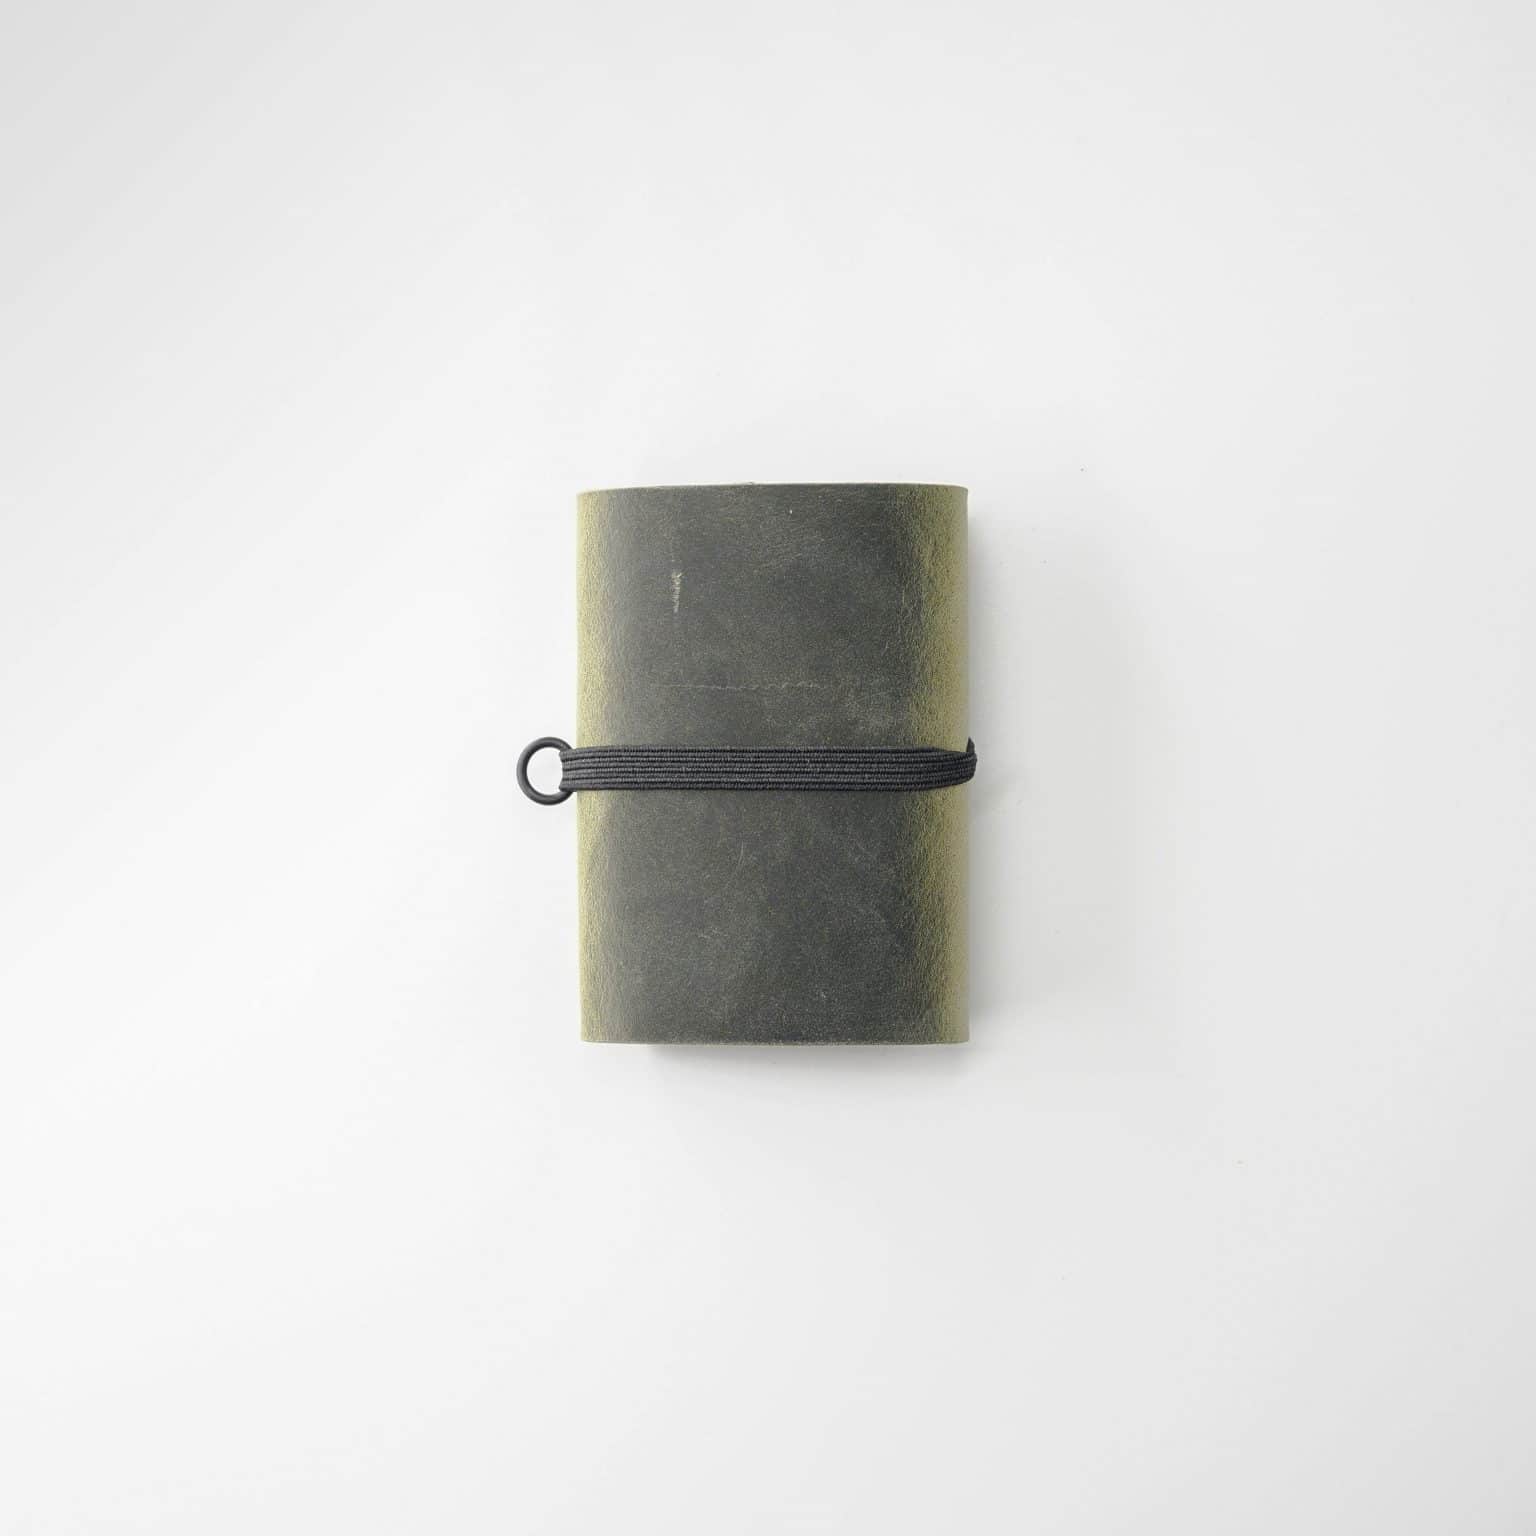 Di alta qualità minimalist portafoglio con custodia sicura per carte.